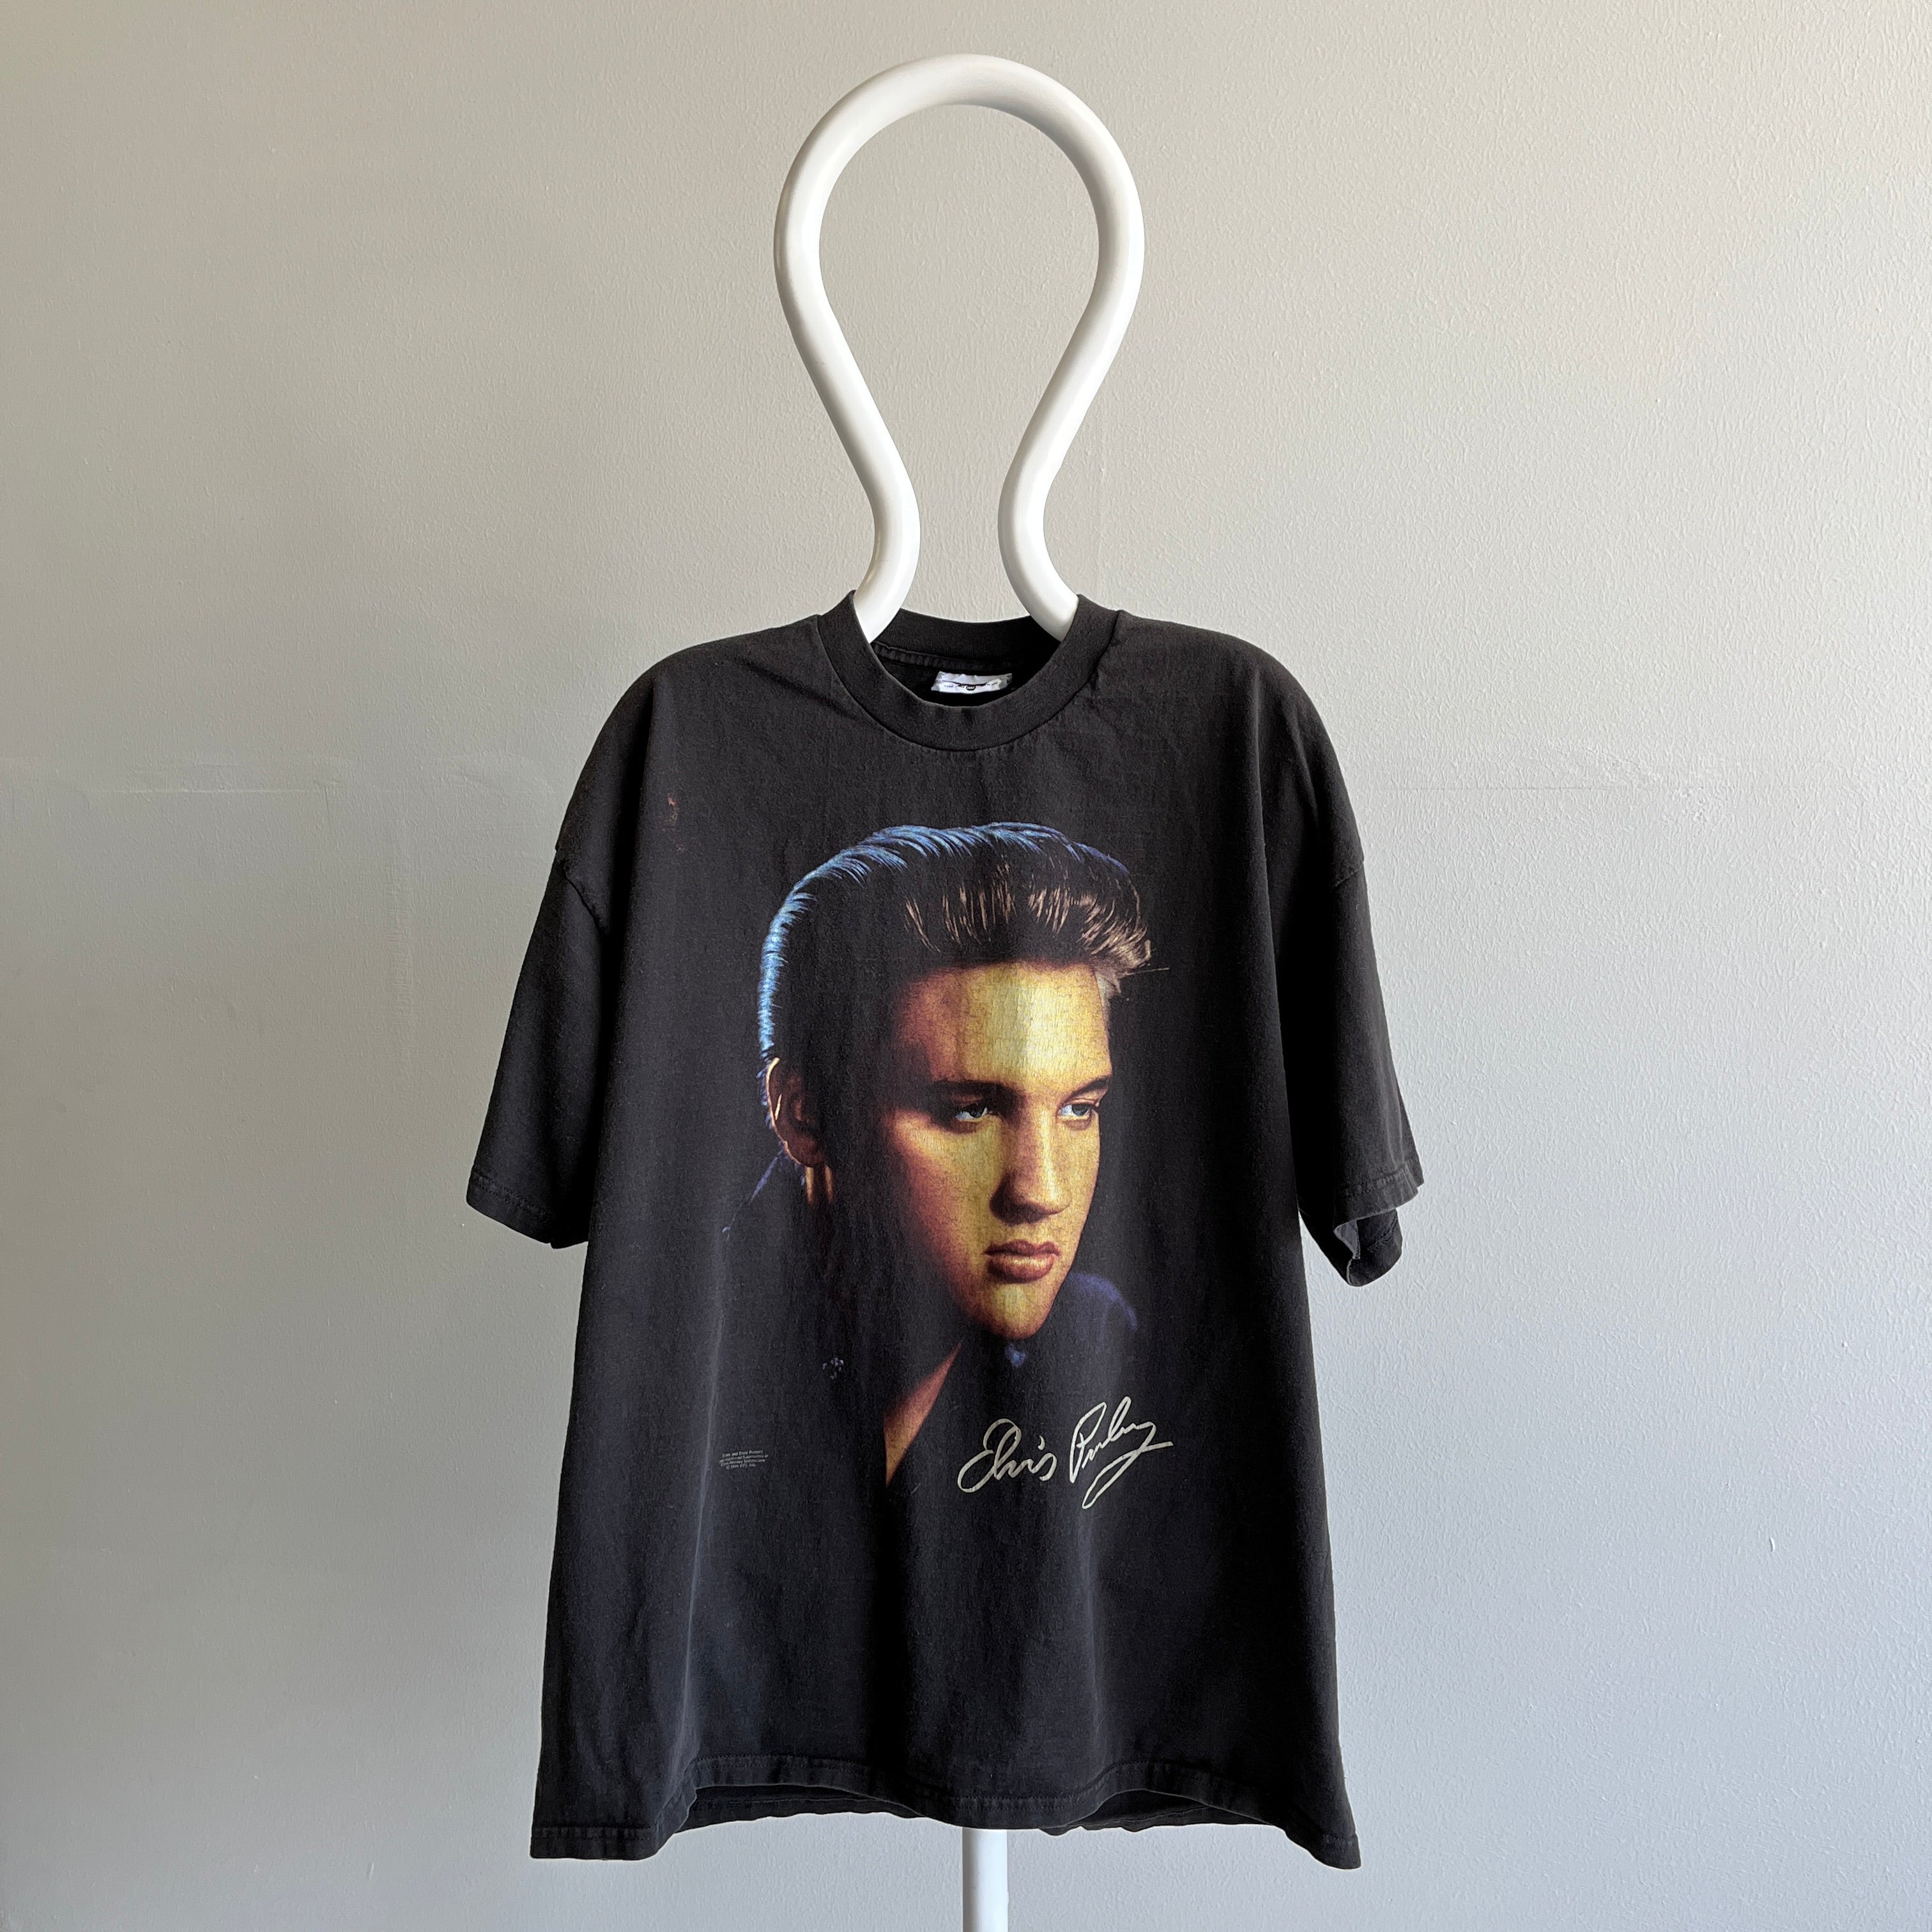 1996 Elvis Giant Head Cotton T-Shirt